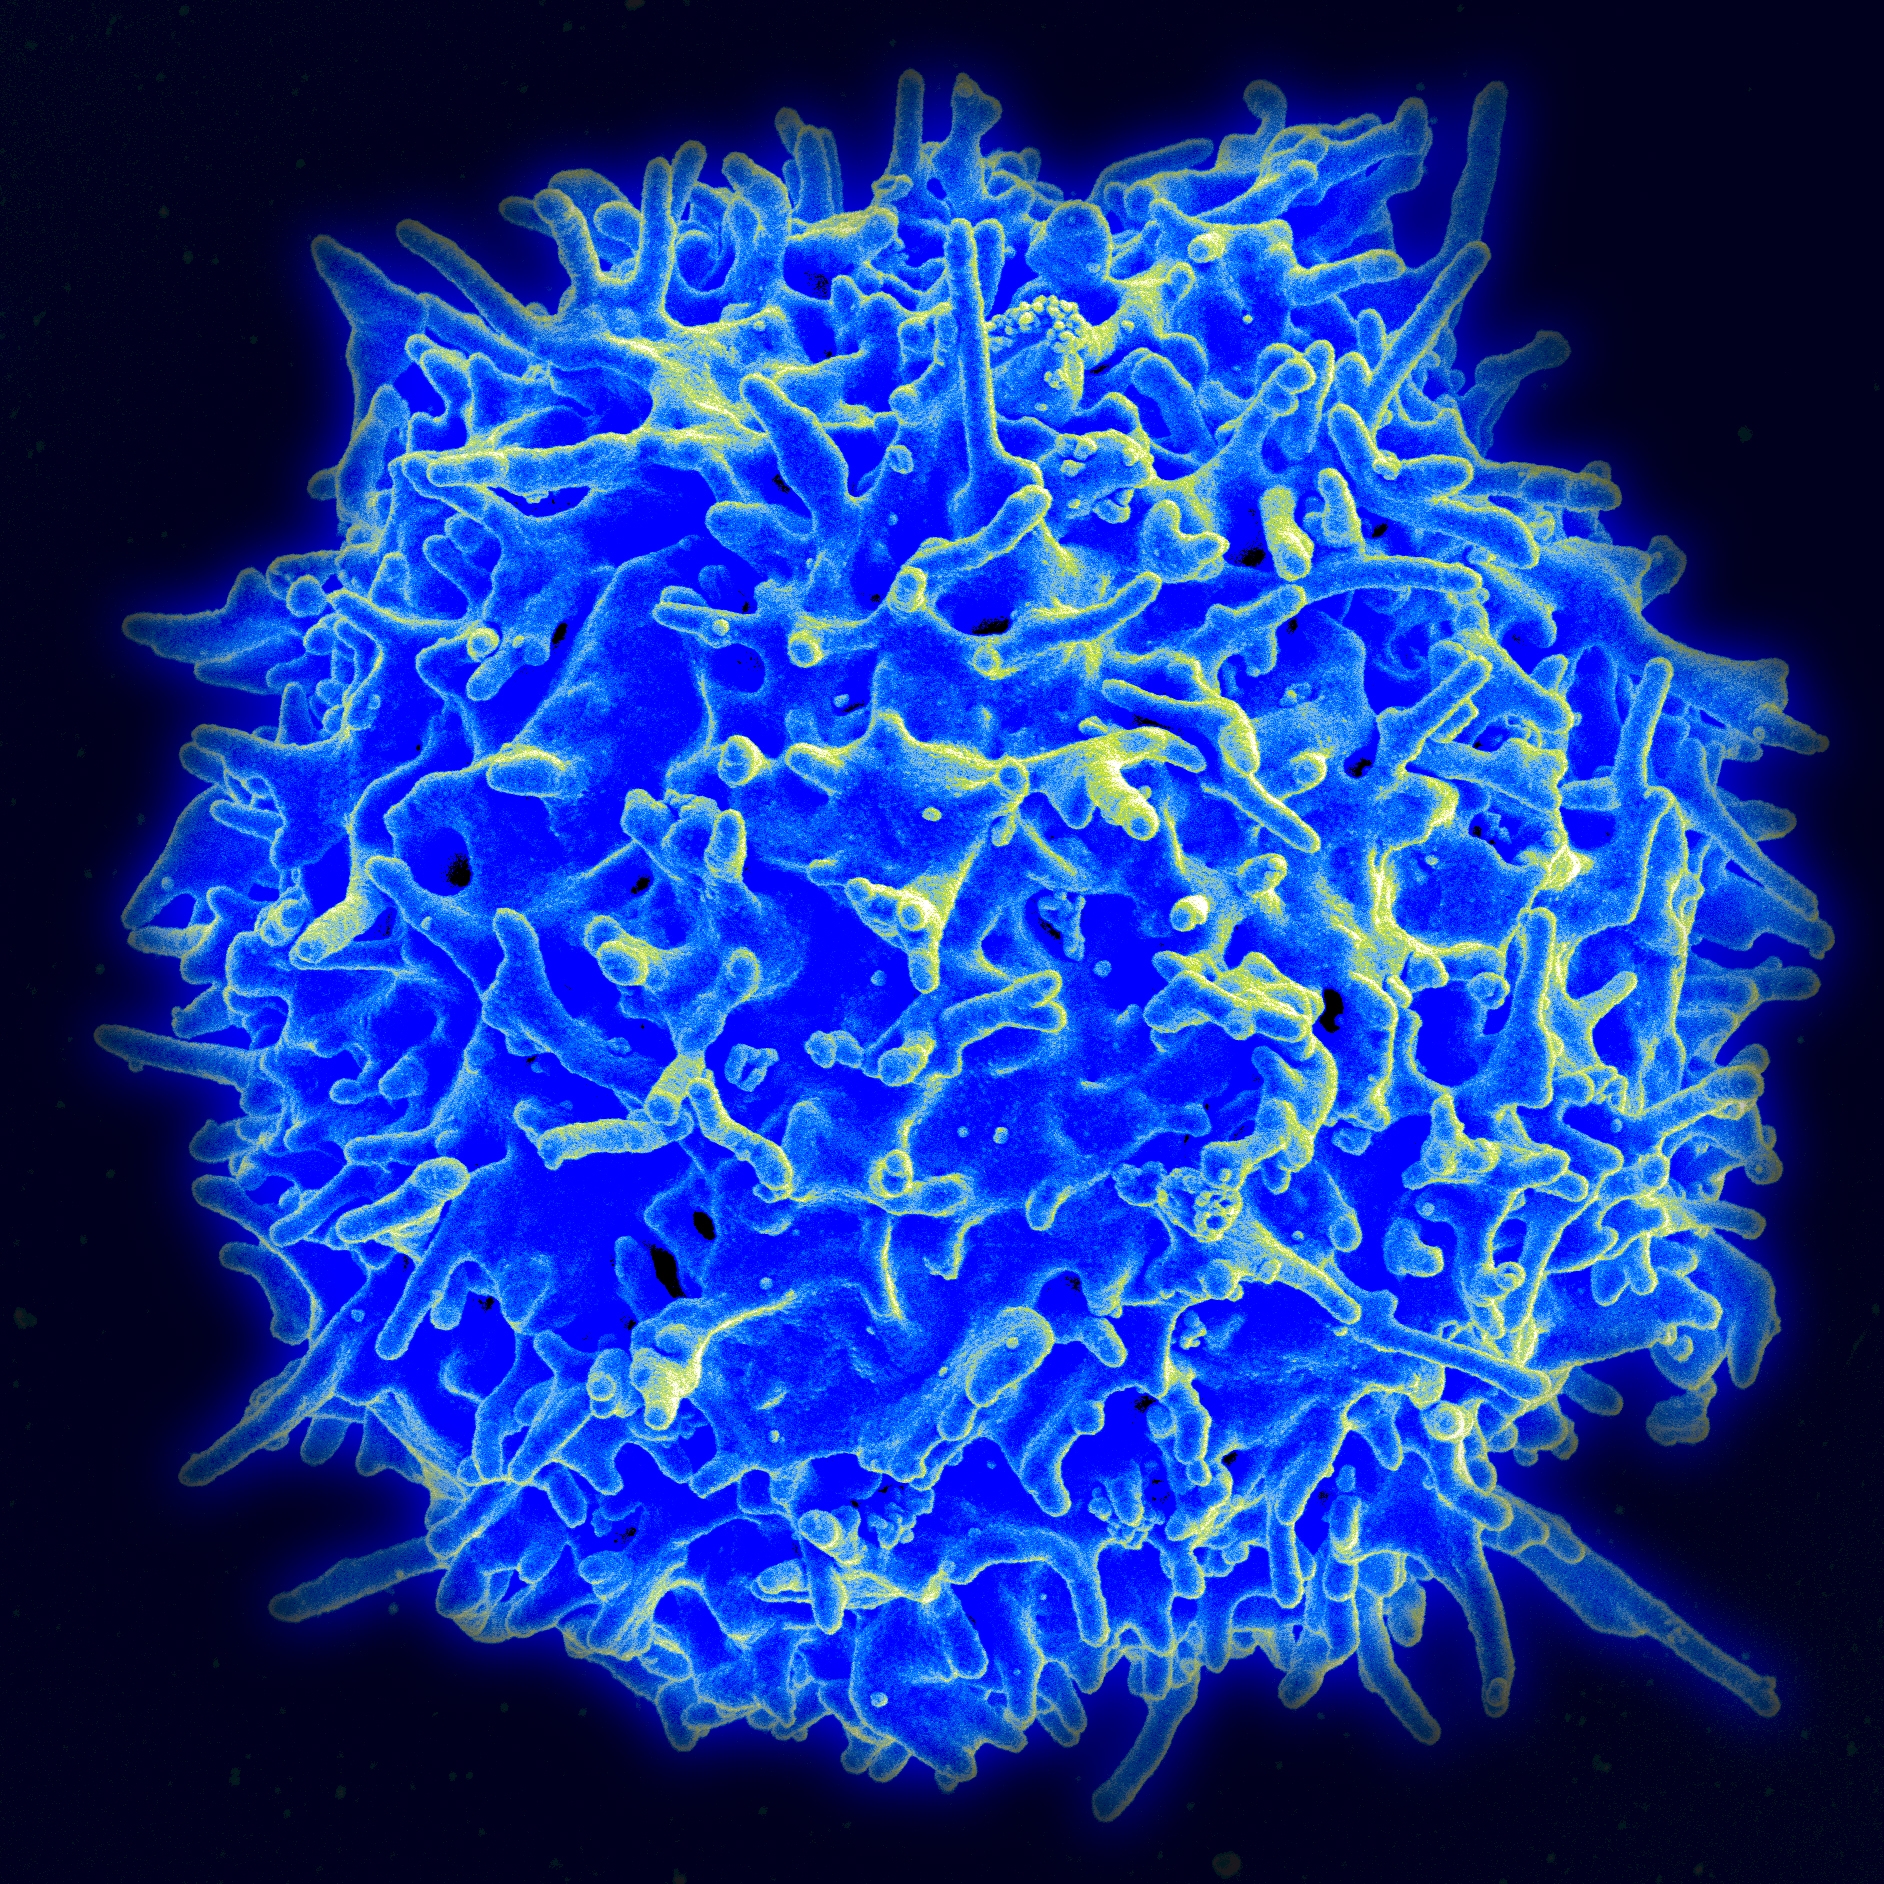 Vergrößerte Aufnahme einer menschlichen T-Zelle